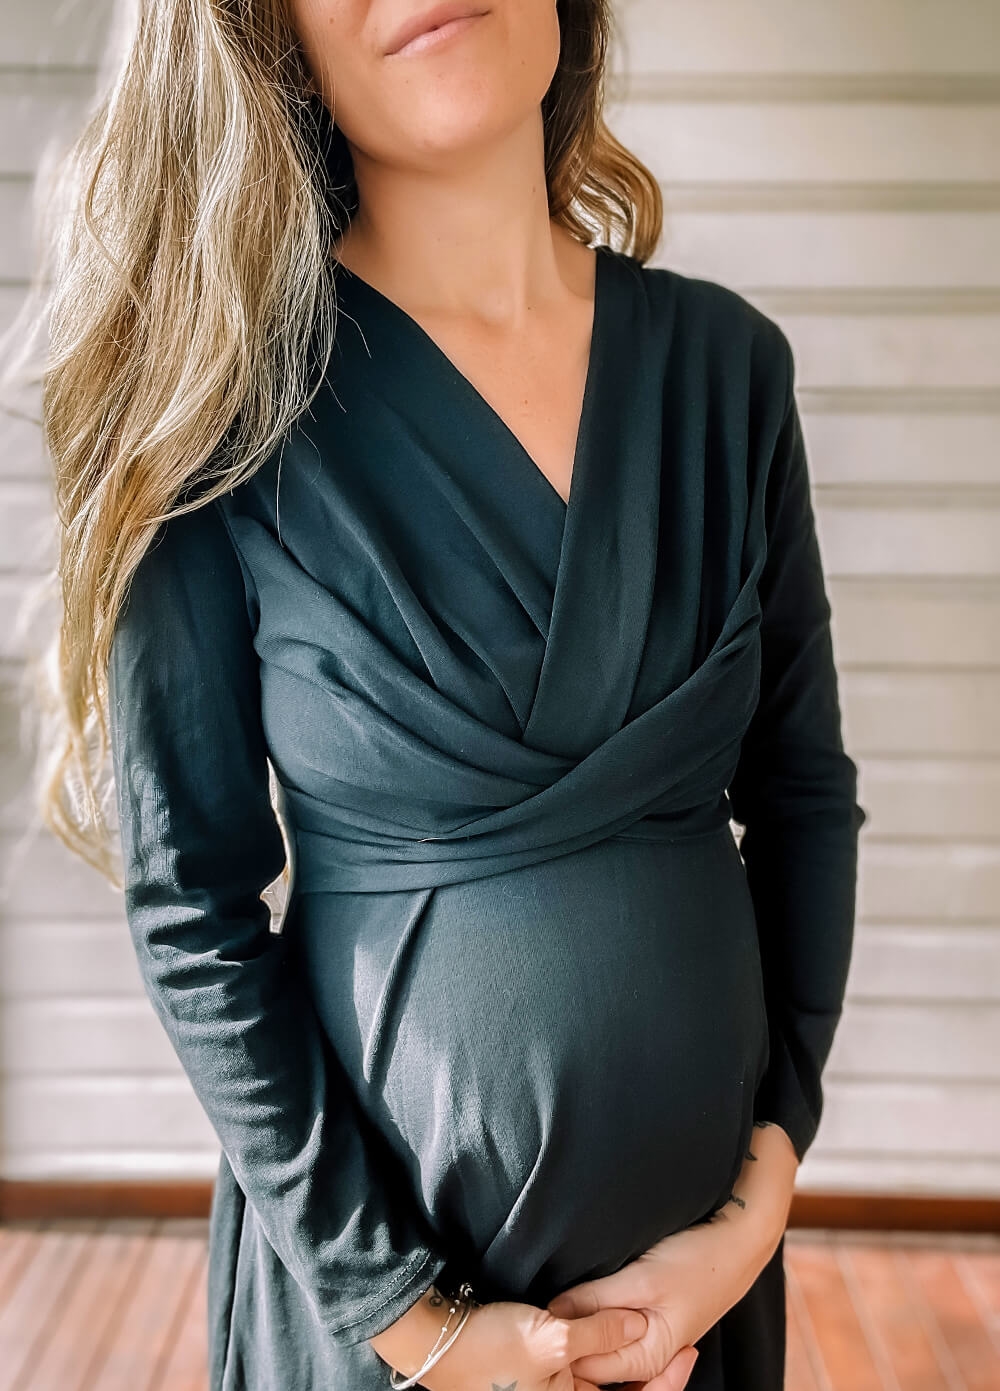 Lait & Co - Etienne Cross Pleat Front Maternity Dress in Black